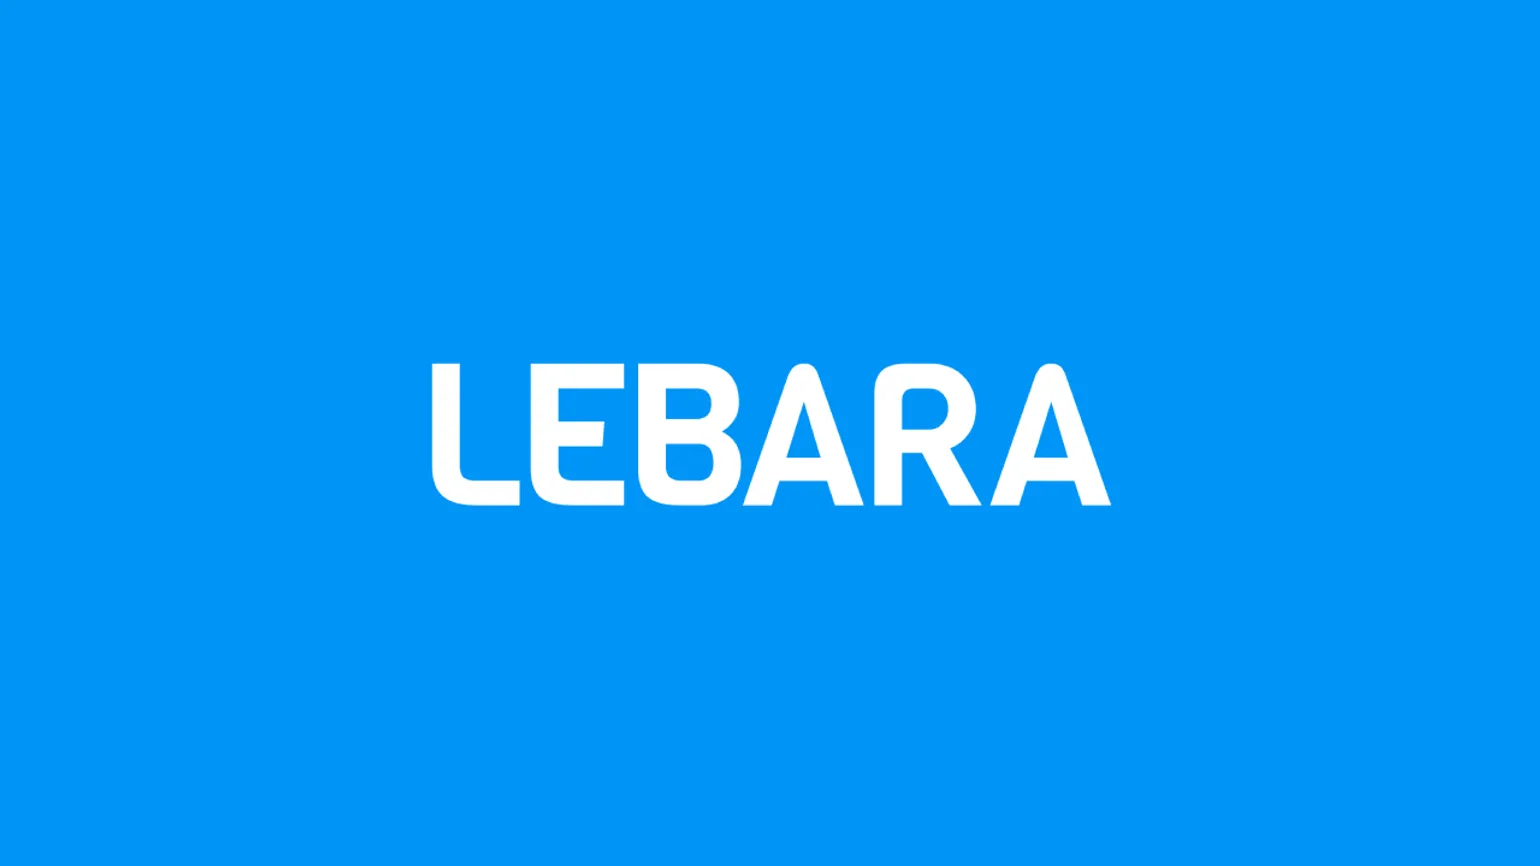 Lebara SIM Only Deals